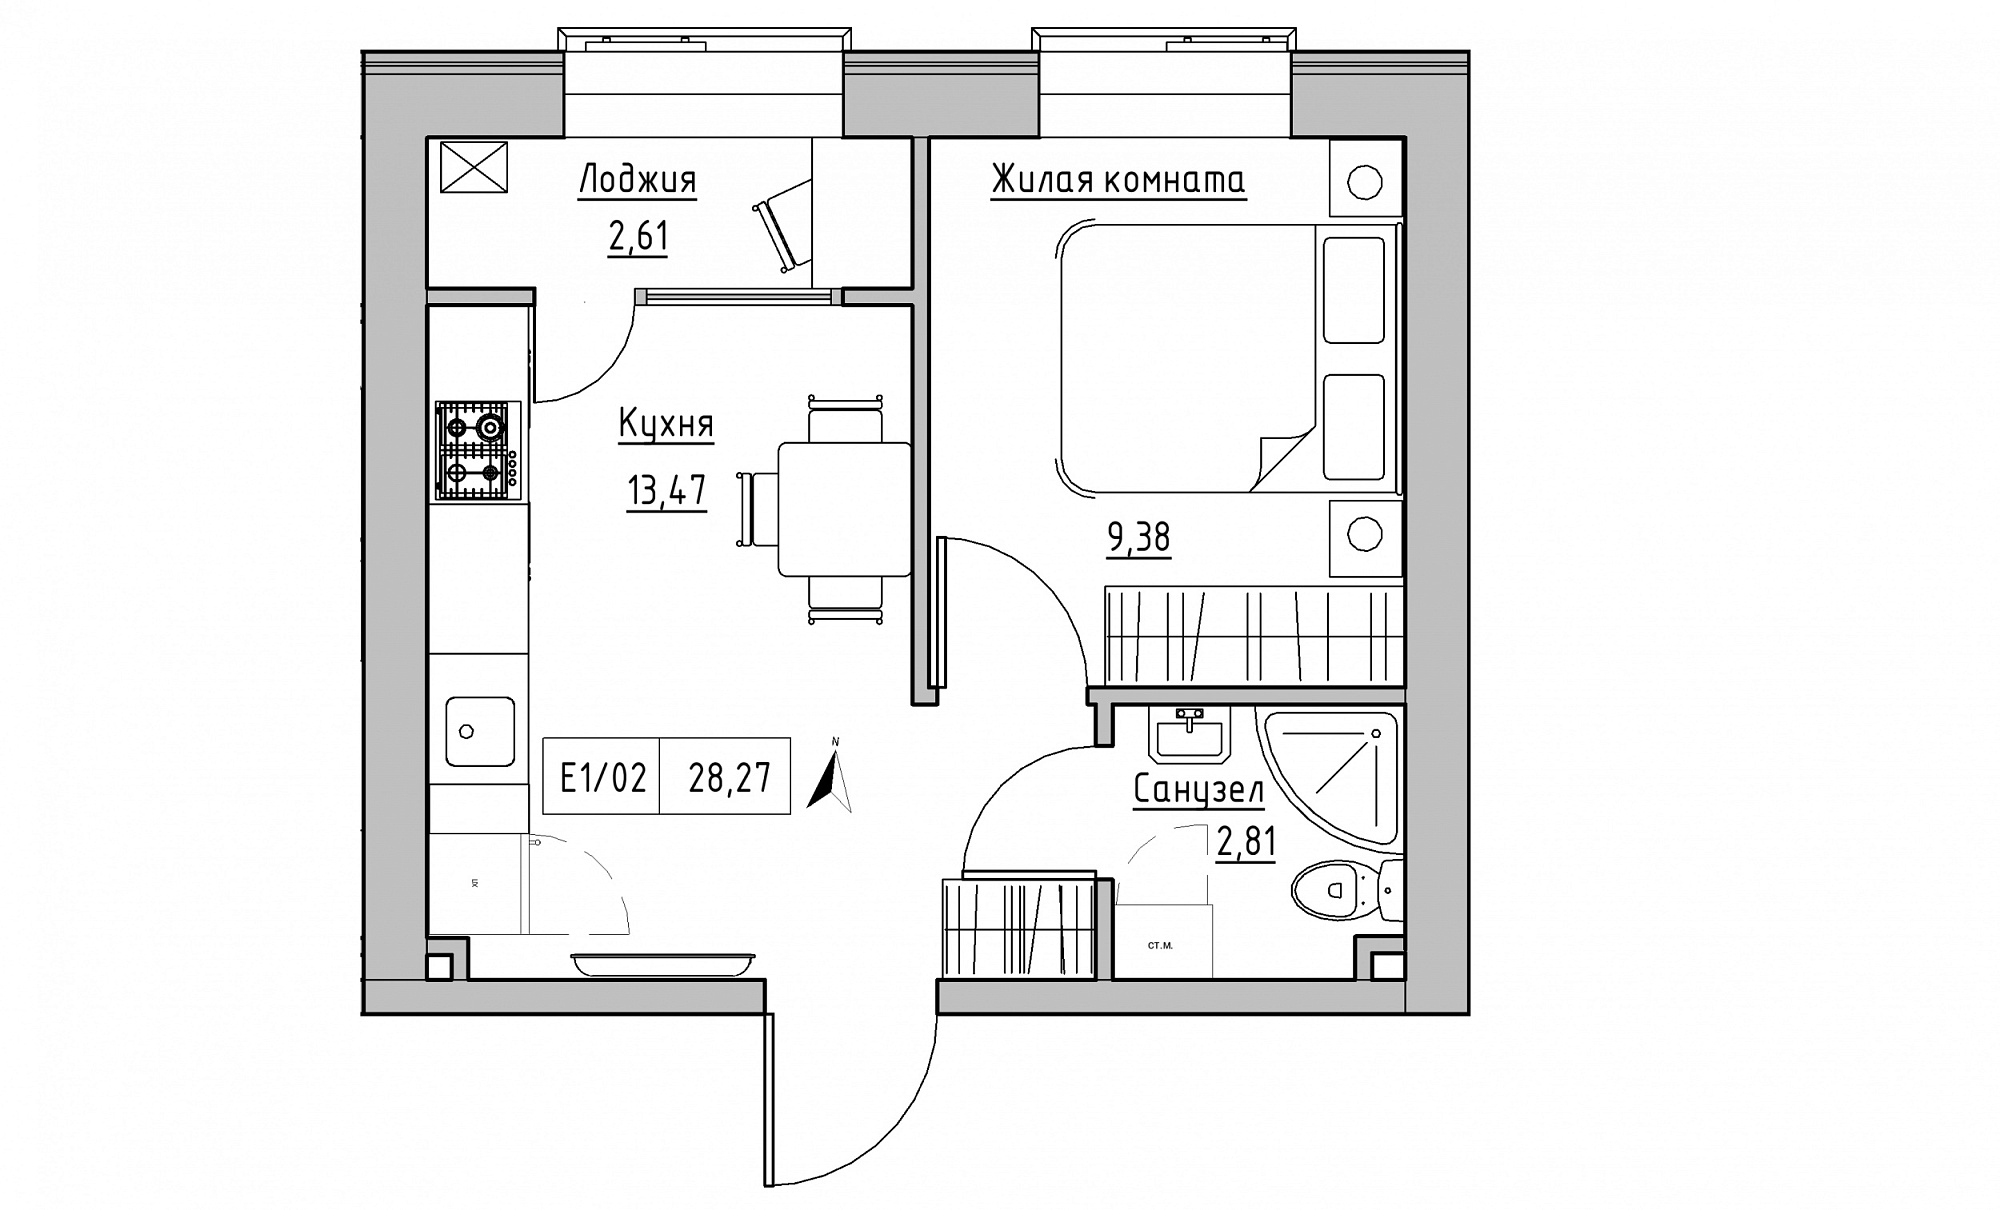 Планировка 1-к квартира площей 28.27м2, KS-015-04/0015.